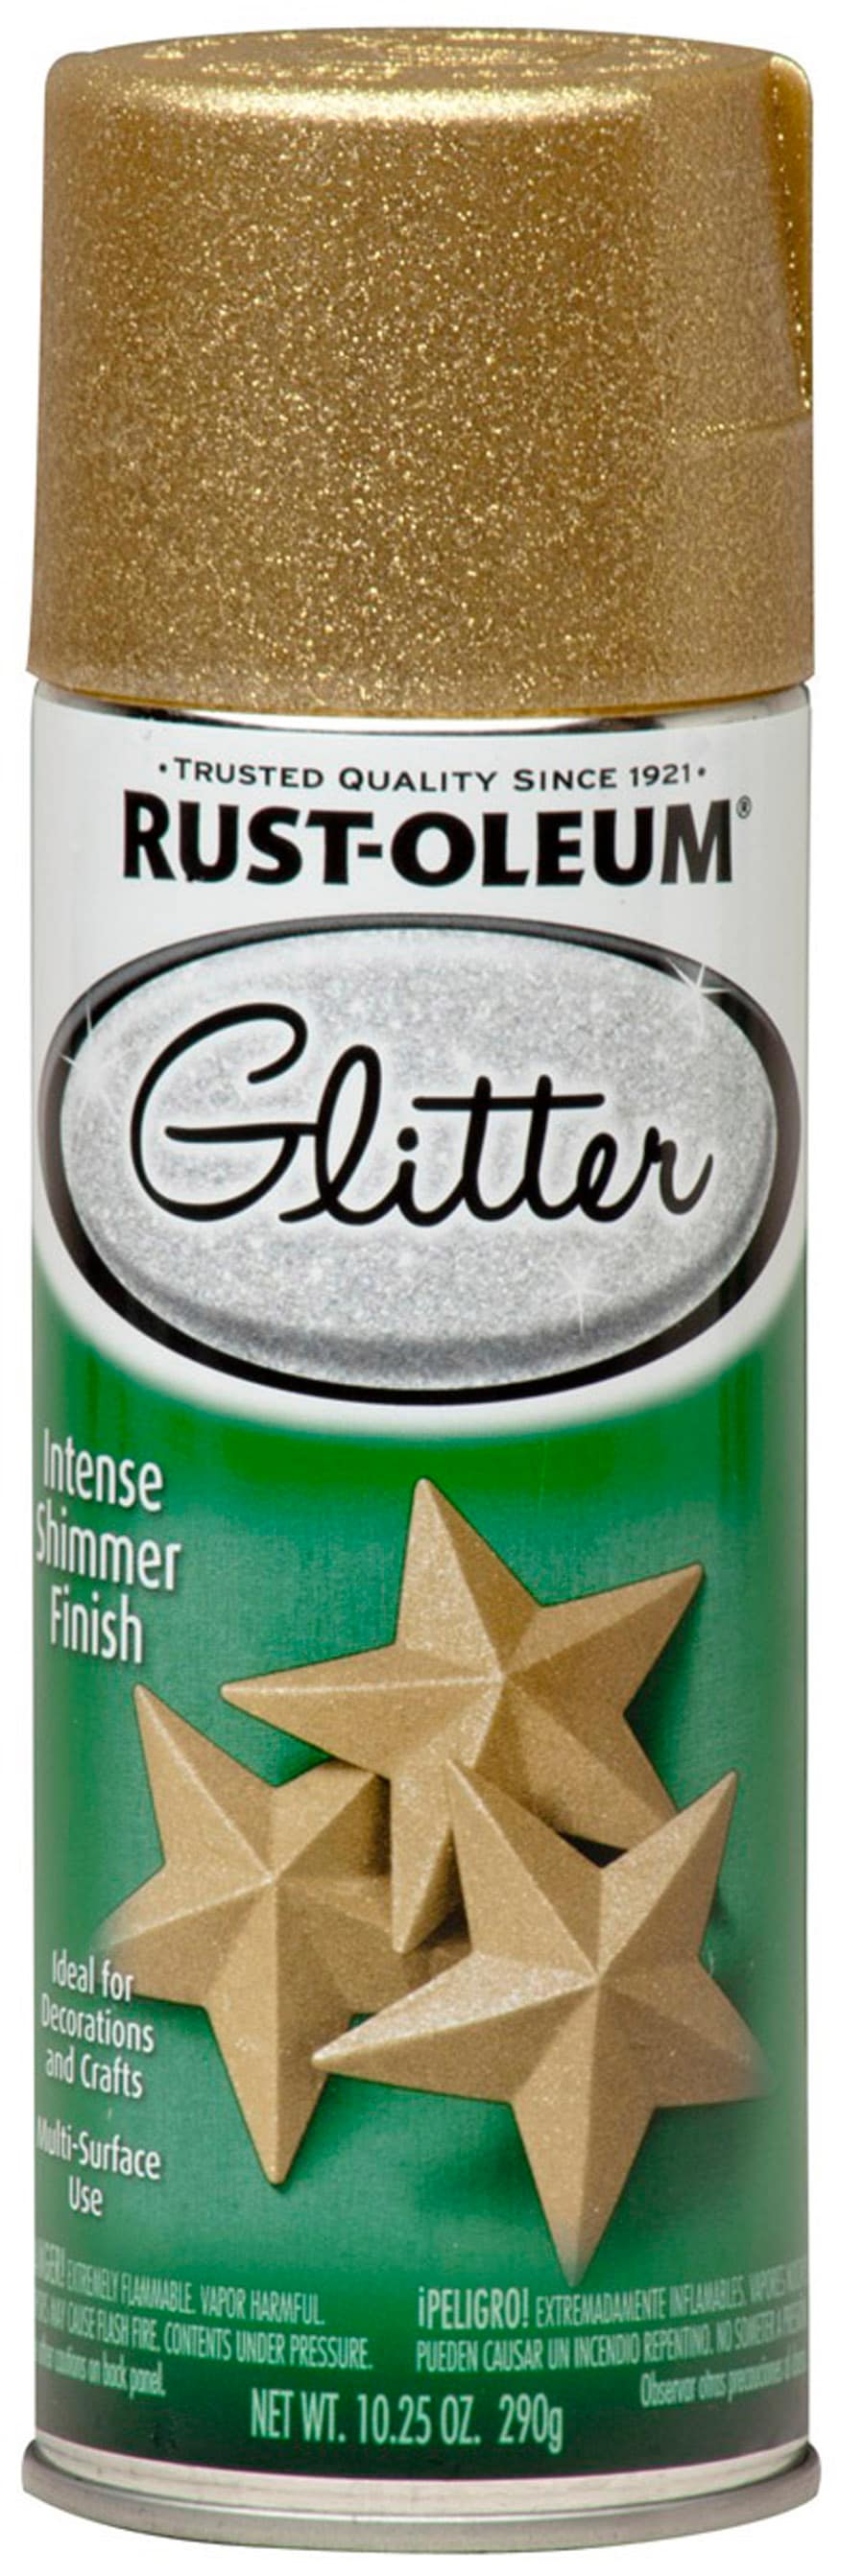 Rust-Oleum Stops Rust 6-Pack Gloss Gold Metallic Spray Paint (NET